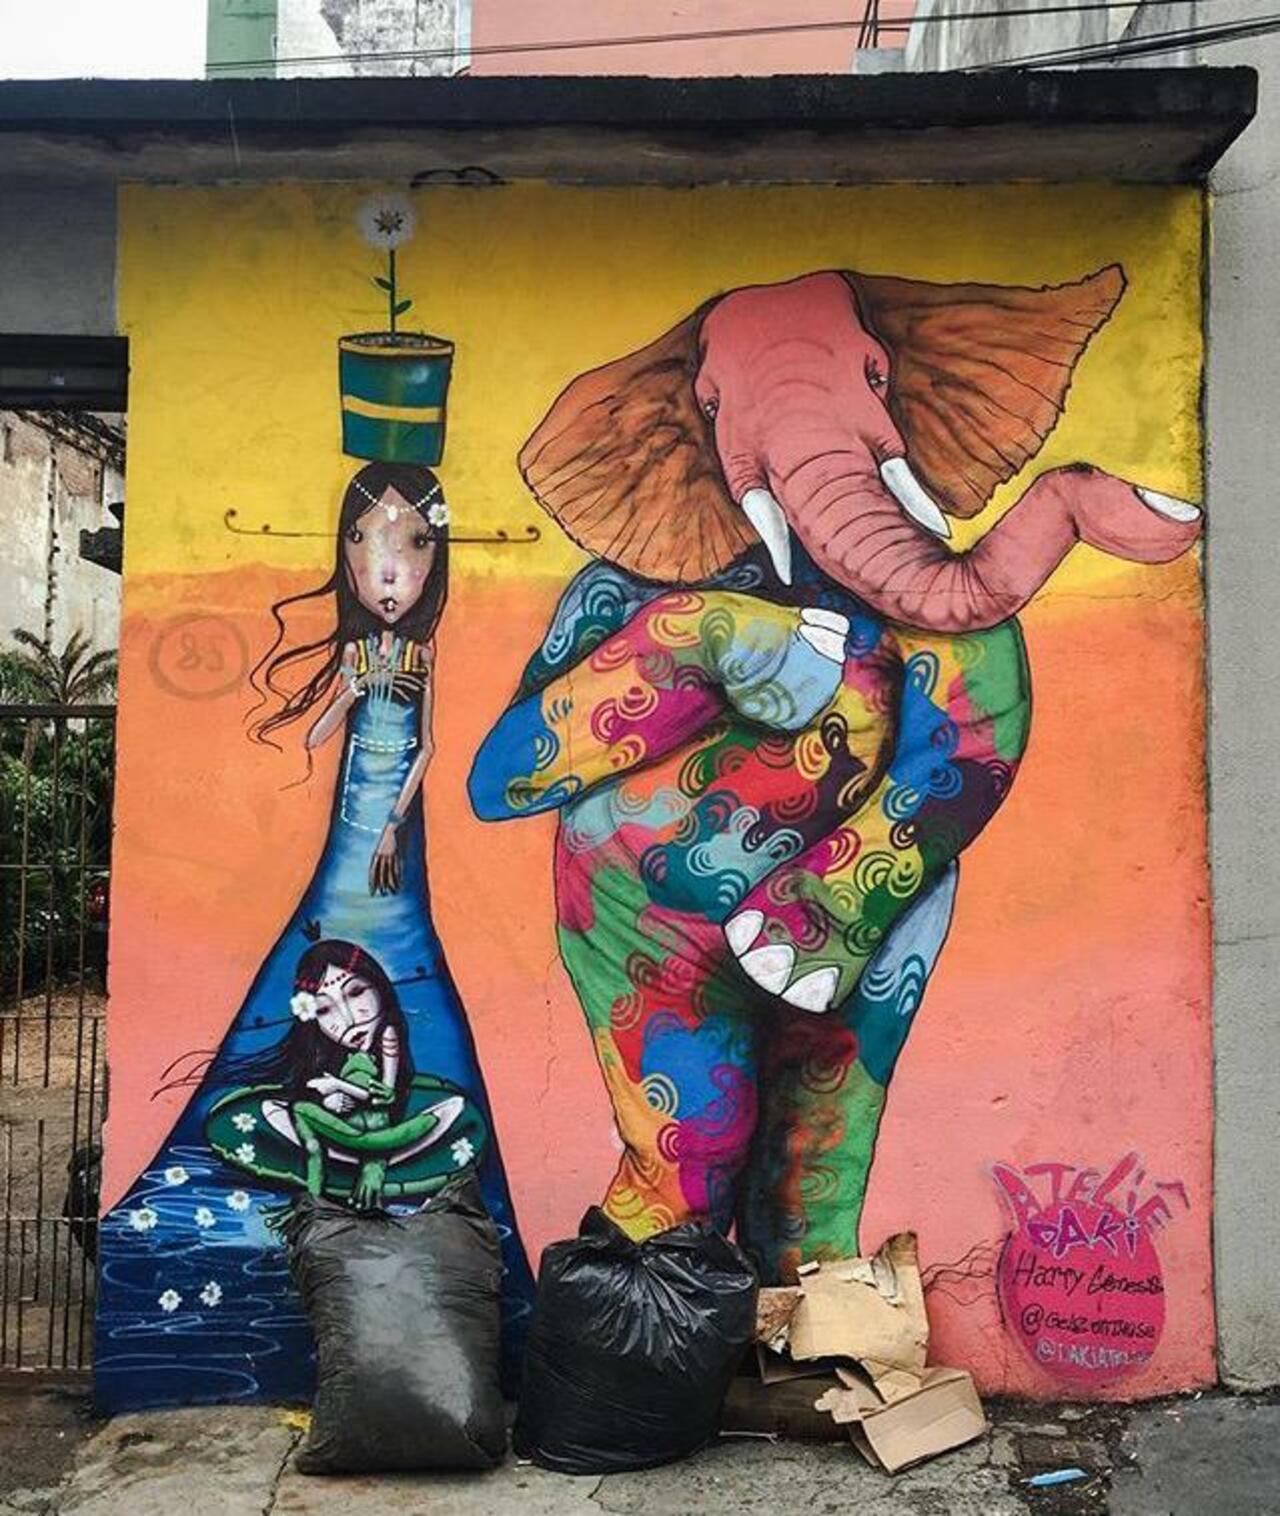 Street Art by Harry Geneis & Gelson in São Paulo 

#art #mural #graffiti #streetart http://t.co/sySI5ufAoe